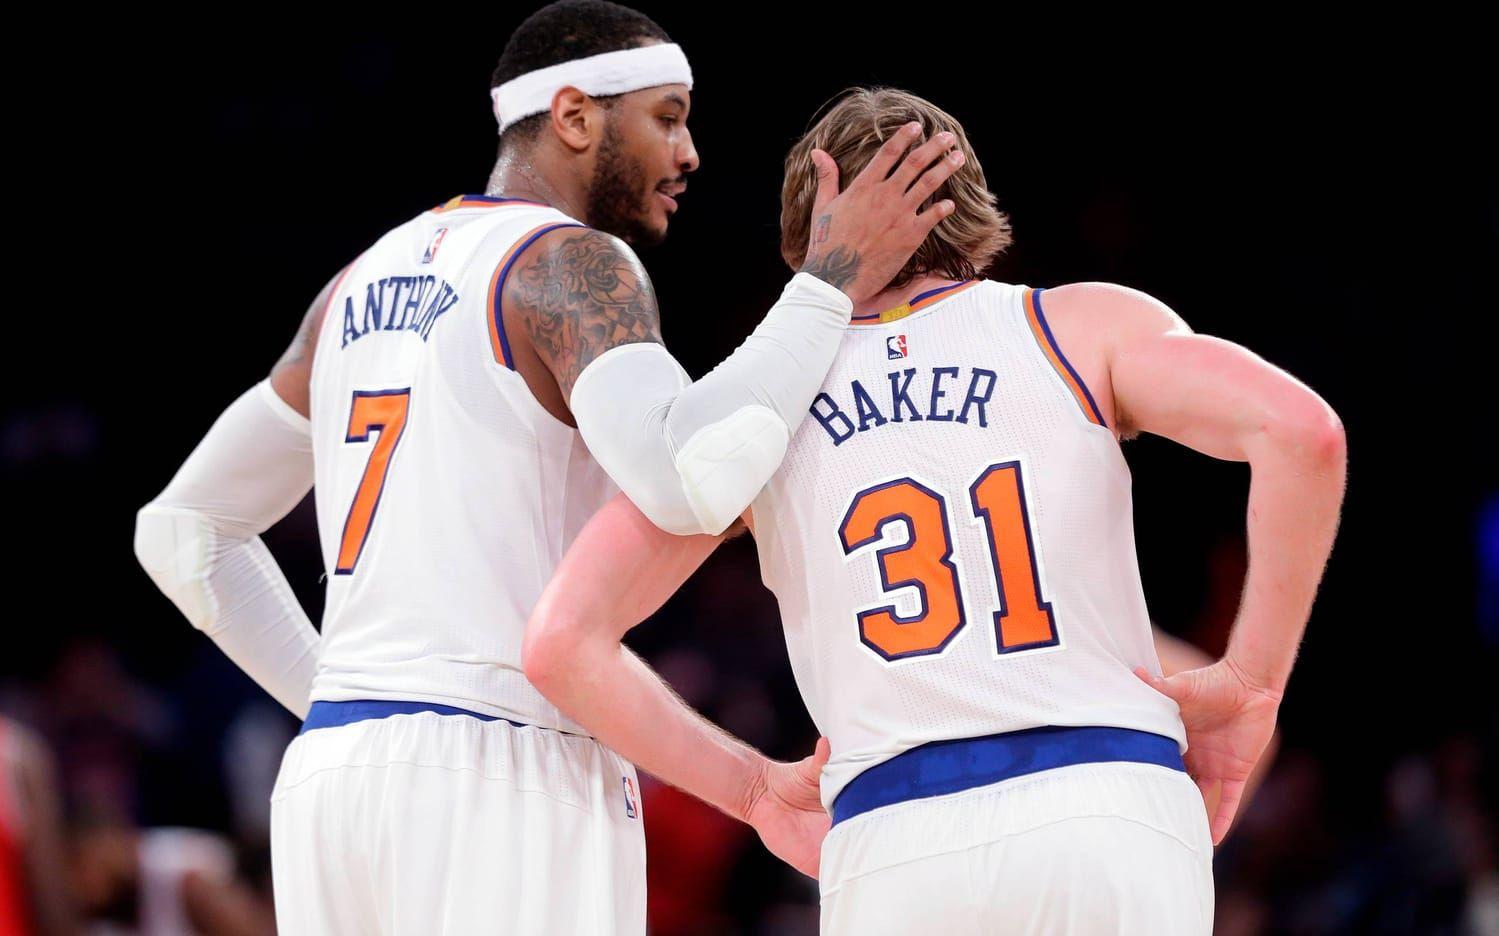 7. New York Knicks (NBA). Värde: 3,3 miljarder dollar. Ökning: 10 procent. Foto: TT/AP